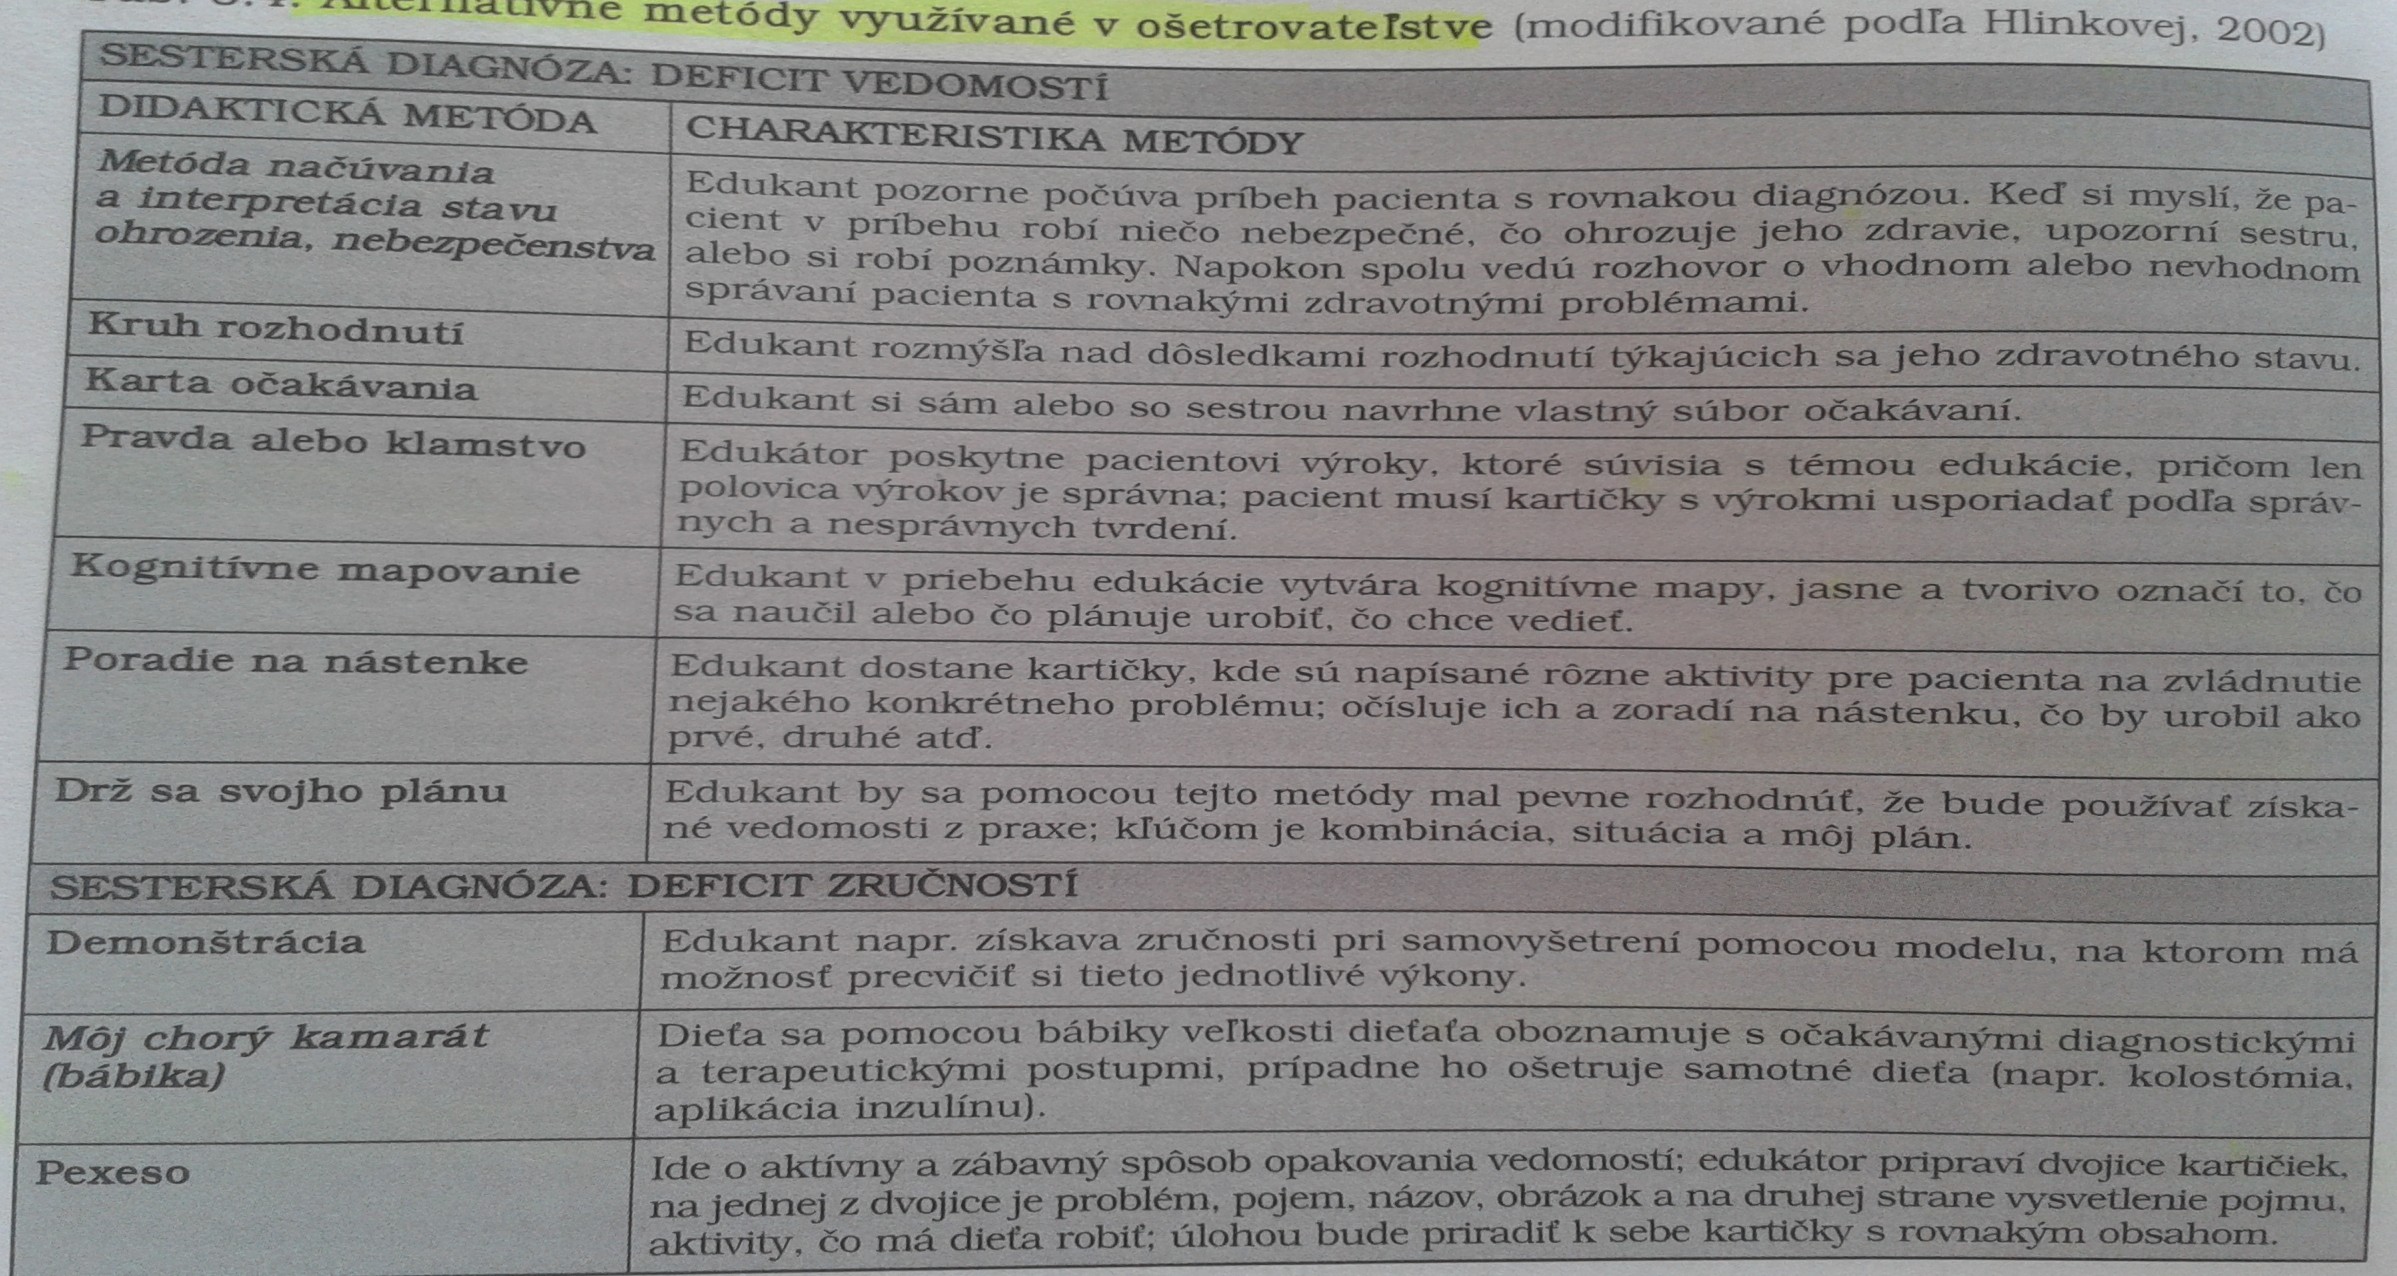 Alternativní metody využívané v ošetřovatelství Hlinková, E, 2002 In